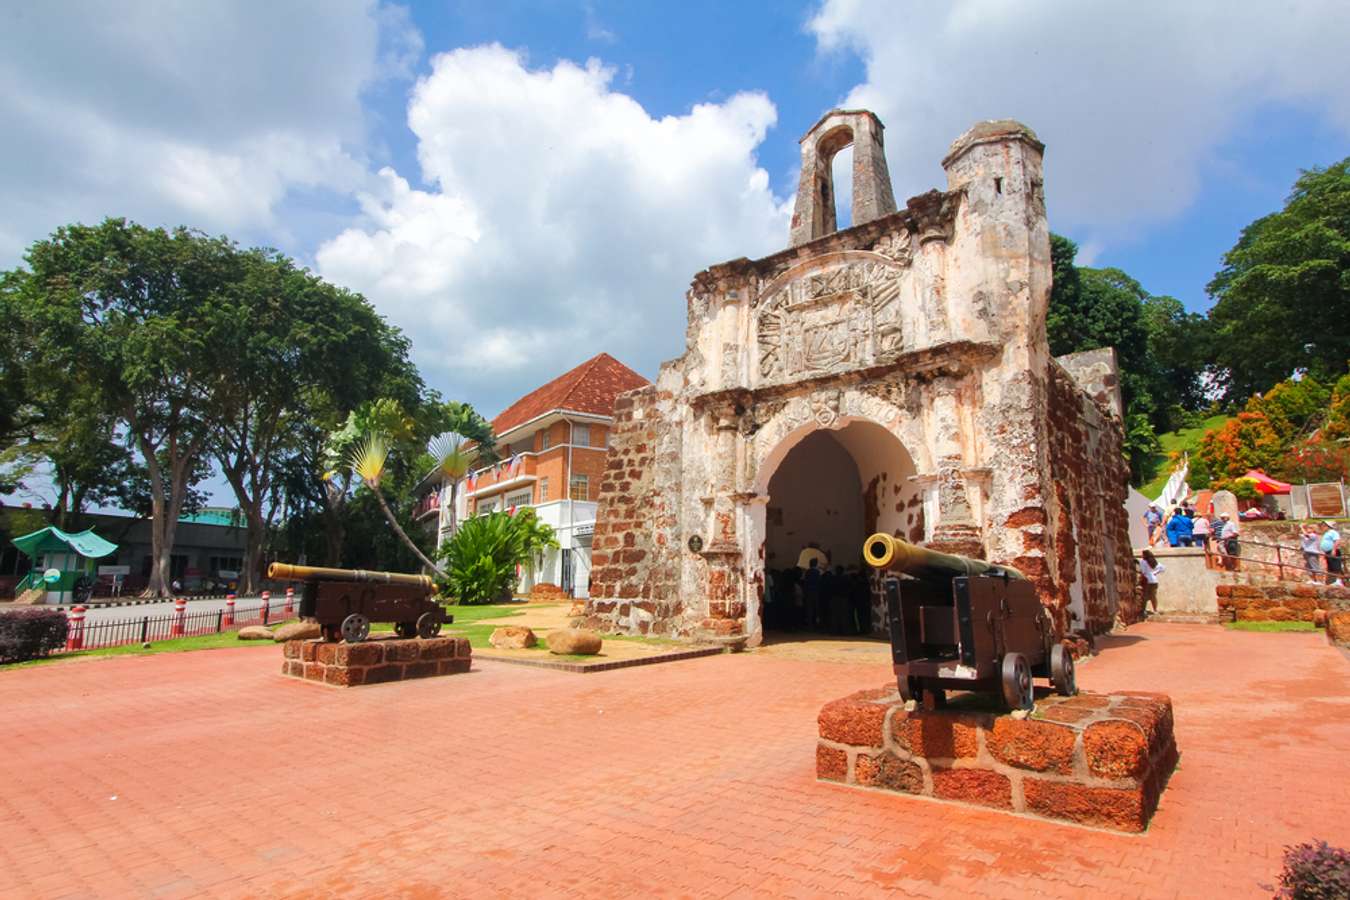 Benteng A Famosa Melaka - What to do in Melaka